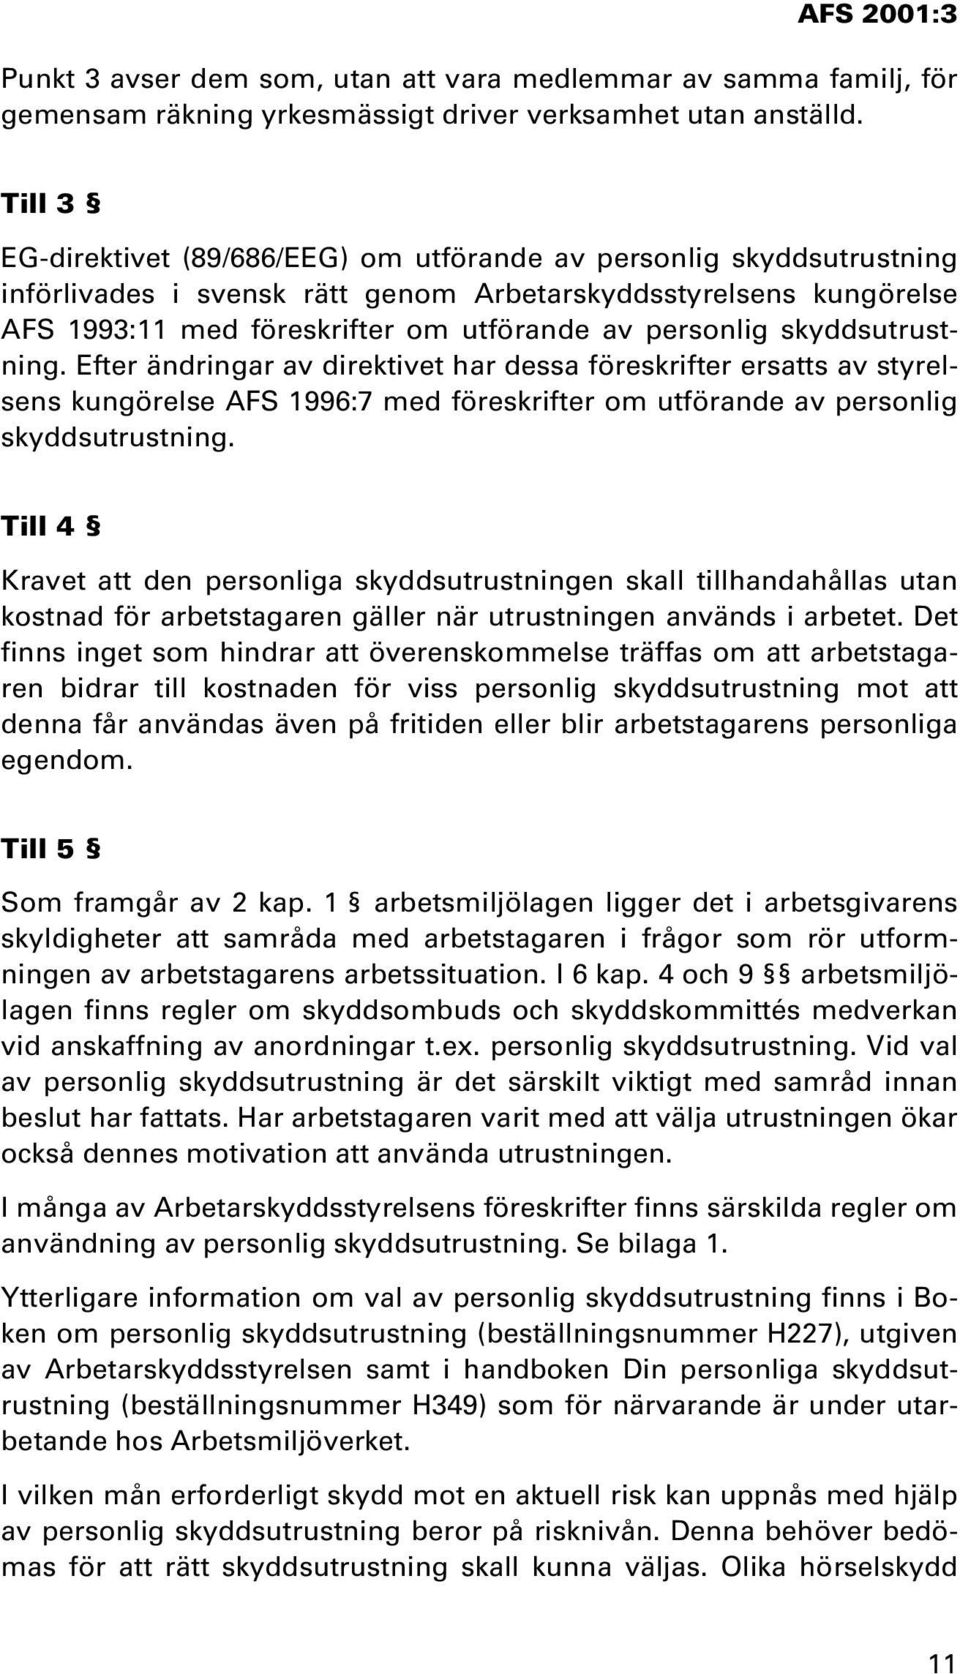 skyddsutrustning. Efter ändringar av direktivet har dessa föreskrifter ersatts av styrelsens kungörelse AFS 1996:7 med föreskrifter om utförande av personlig skyddsutrustning.